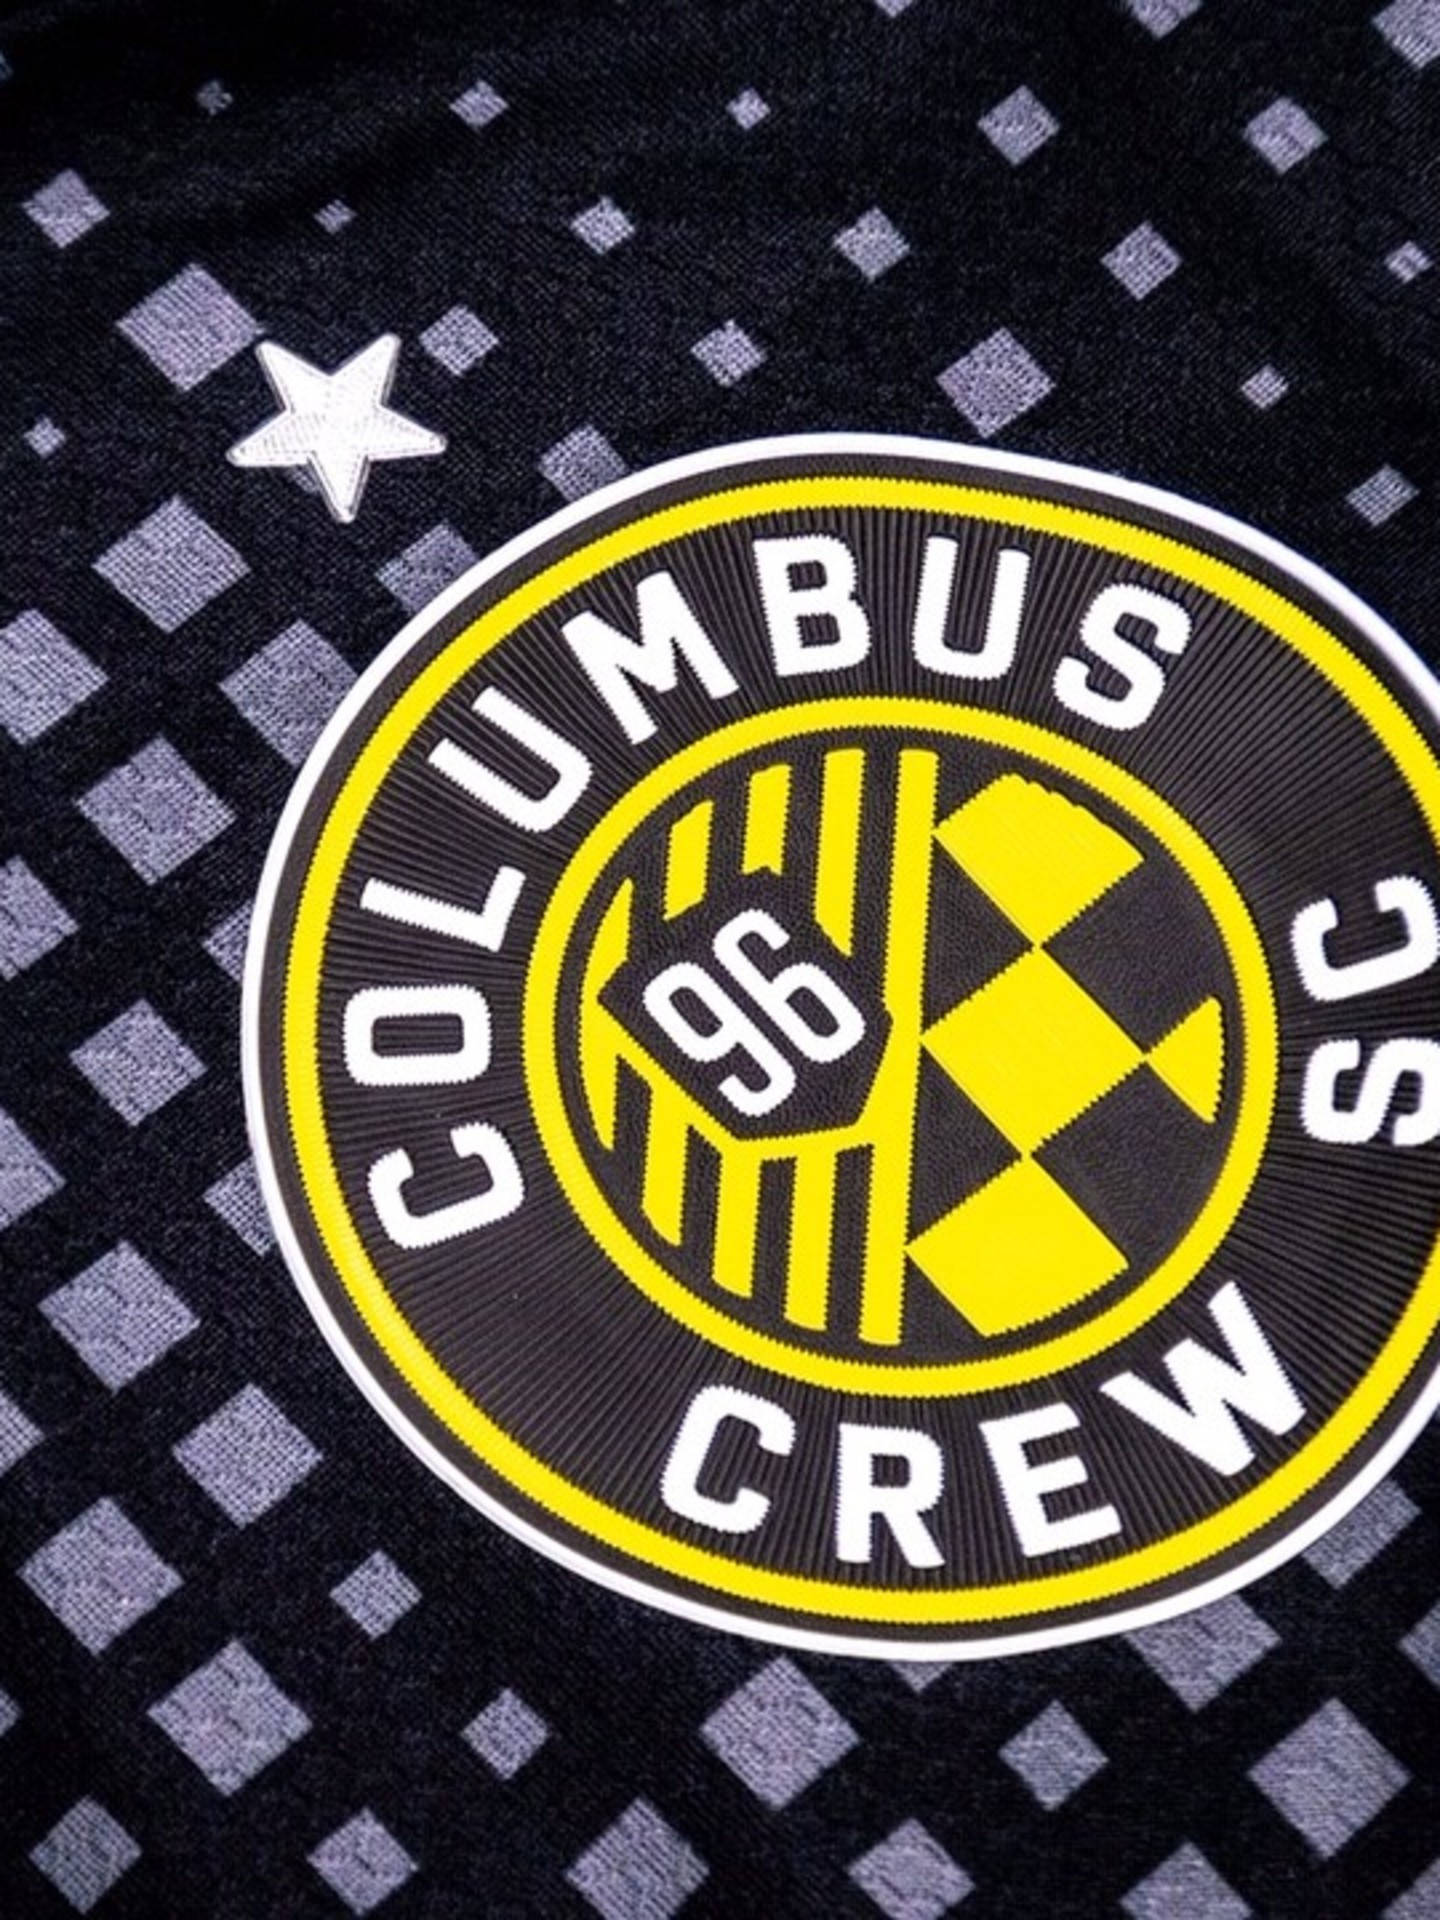 Onovo Logotipo Do Columbus Crew Em Um Elegante Fundo Preto. Papel de Parede